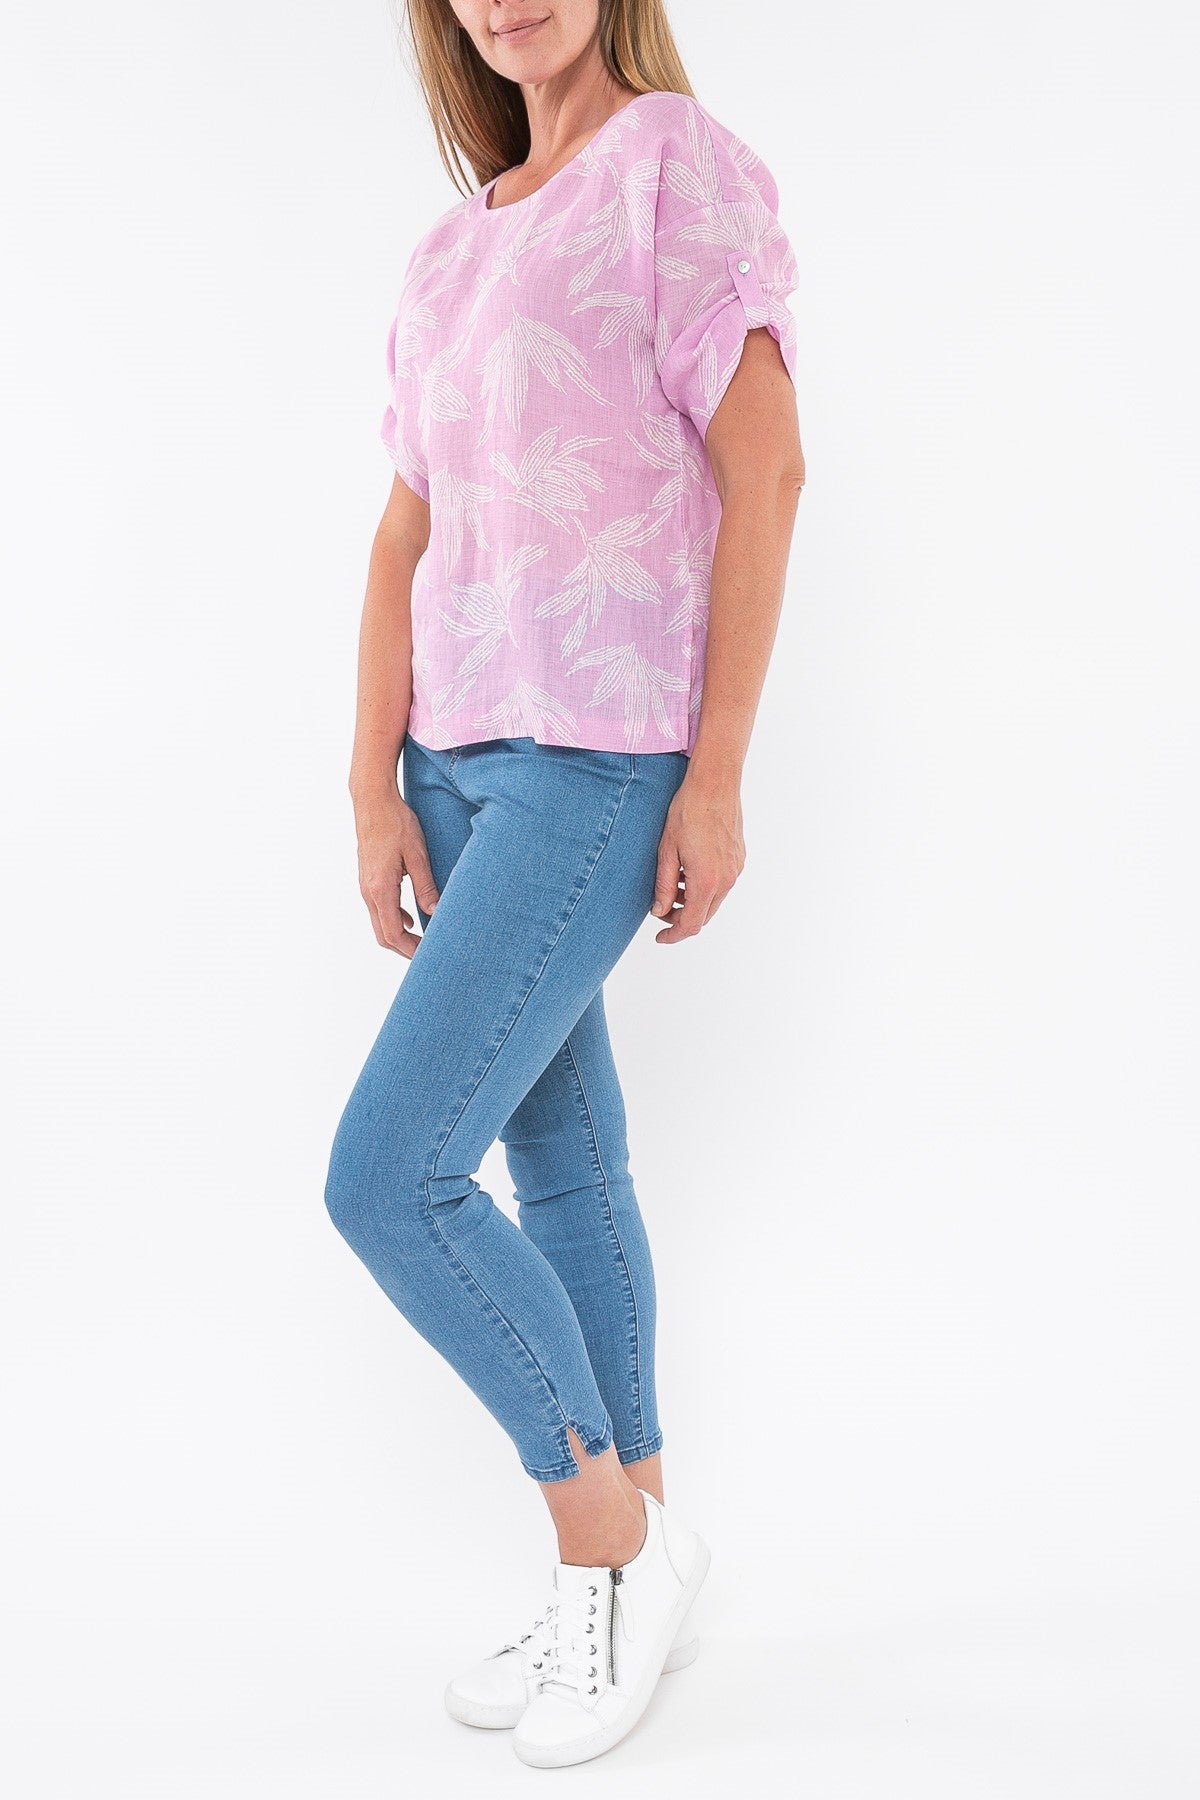 Palm Linen Top - Lavender - Sare StoreJumpShirts